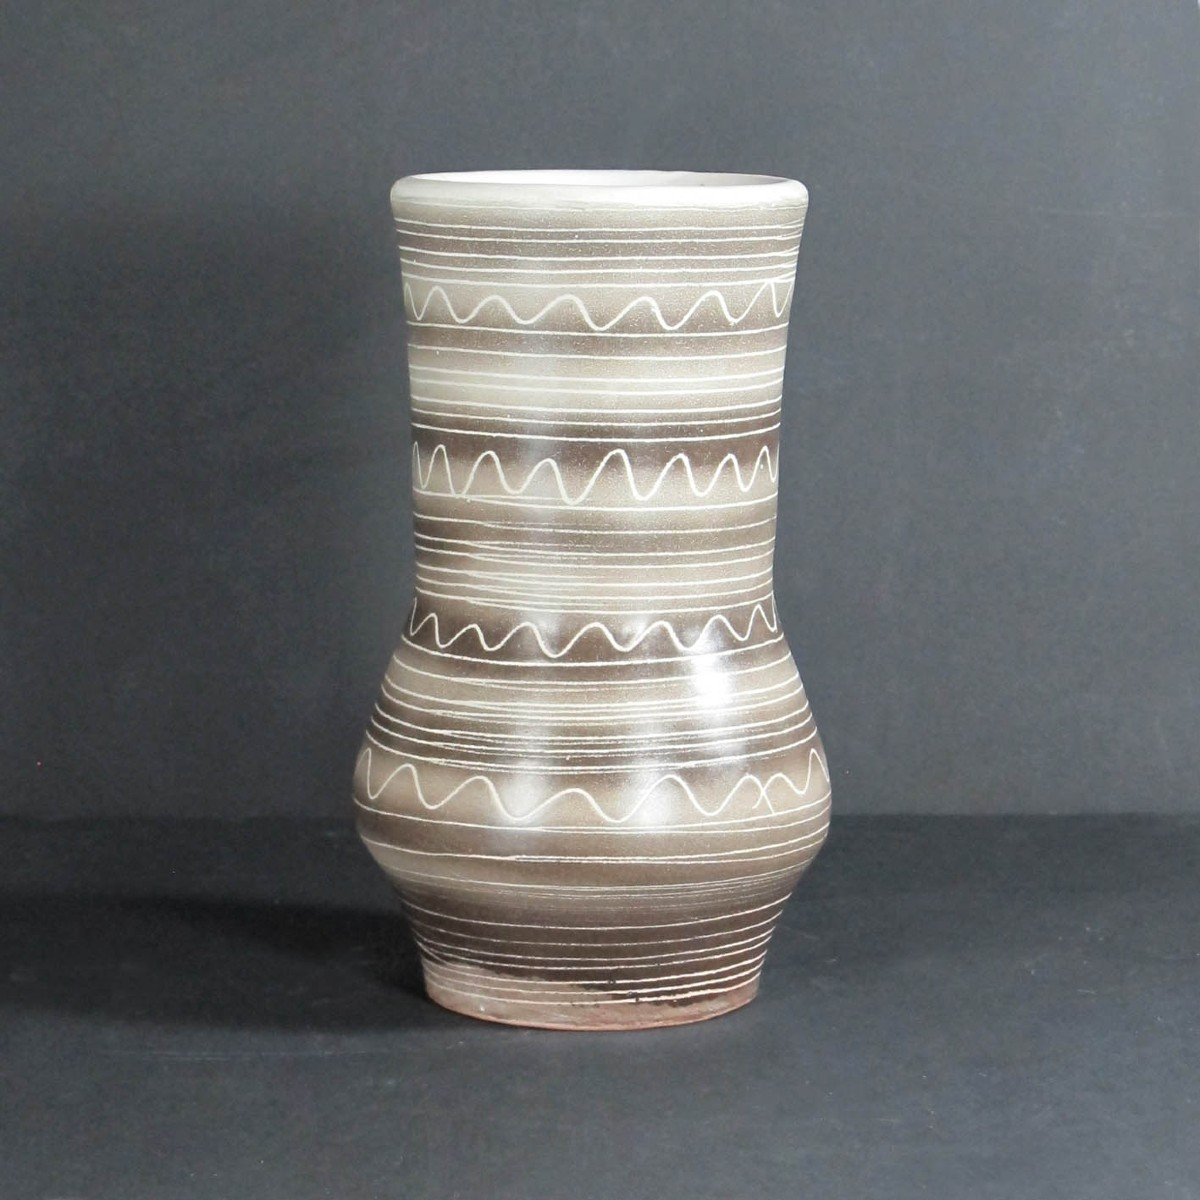 Vase en céramique par Jean Austruy années 60